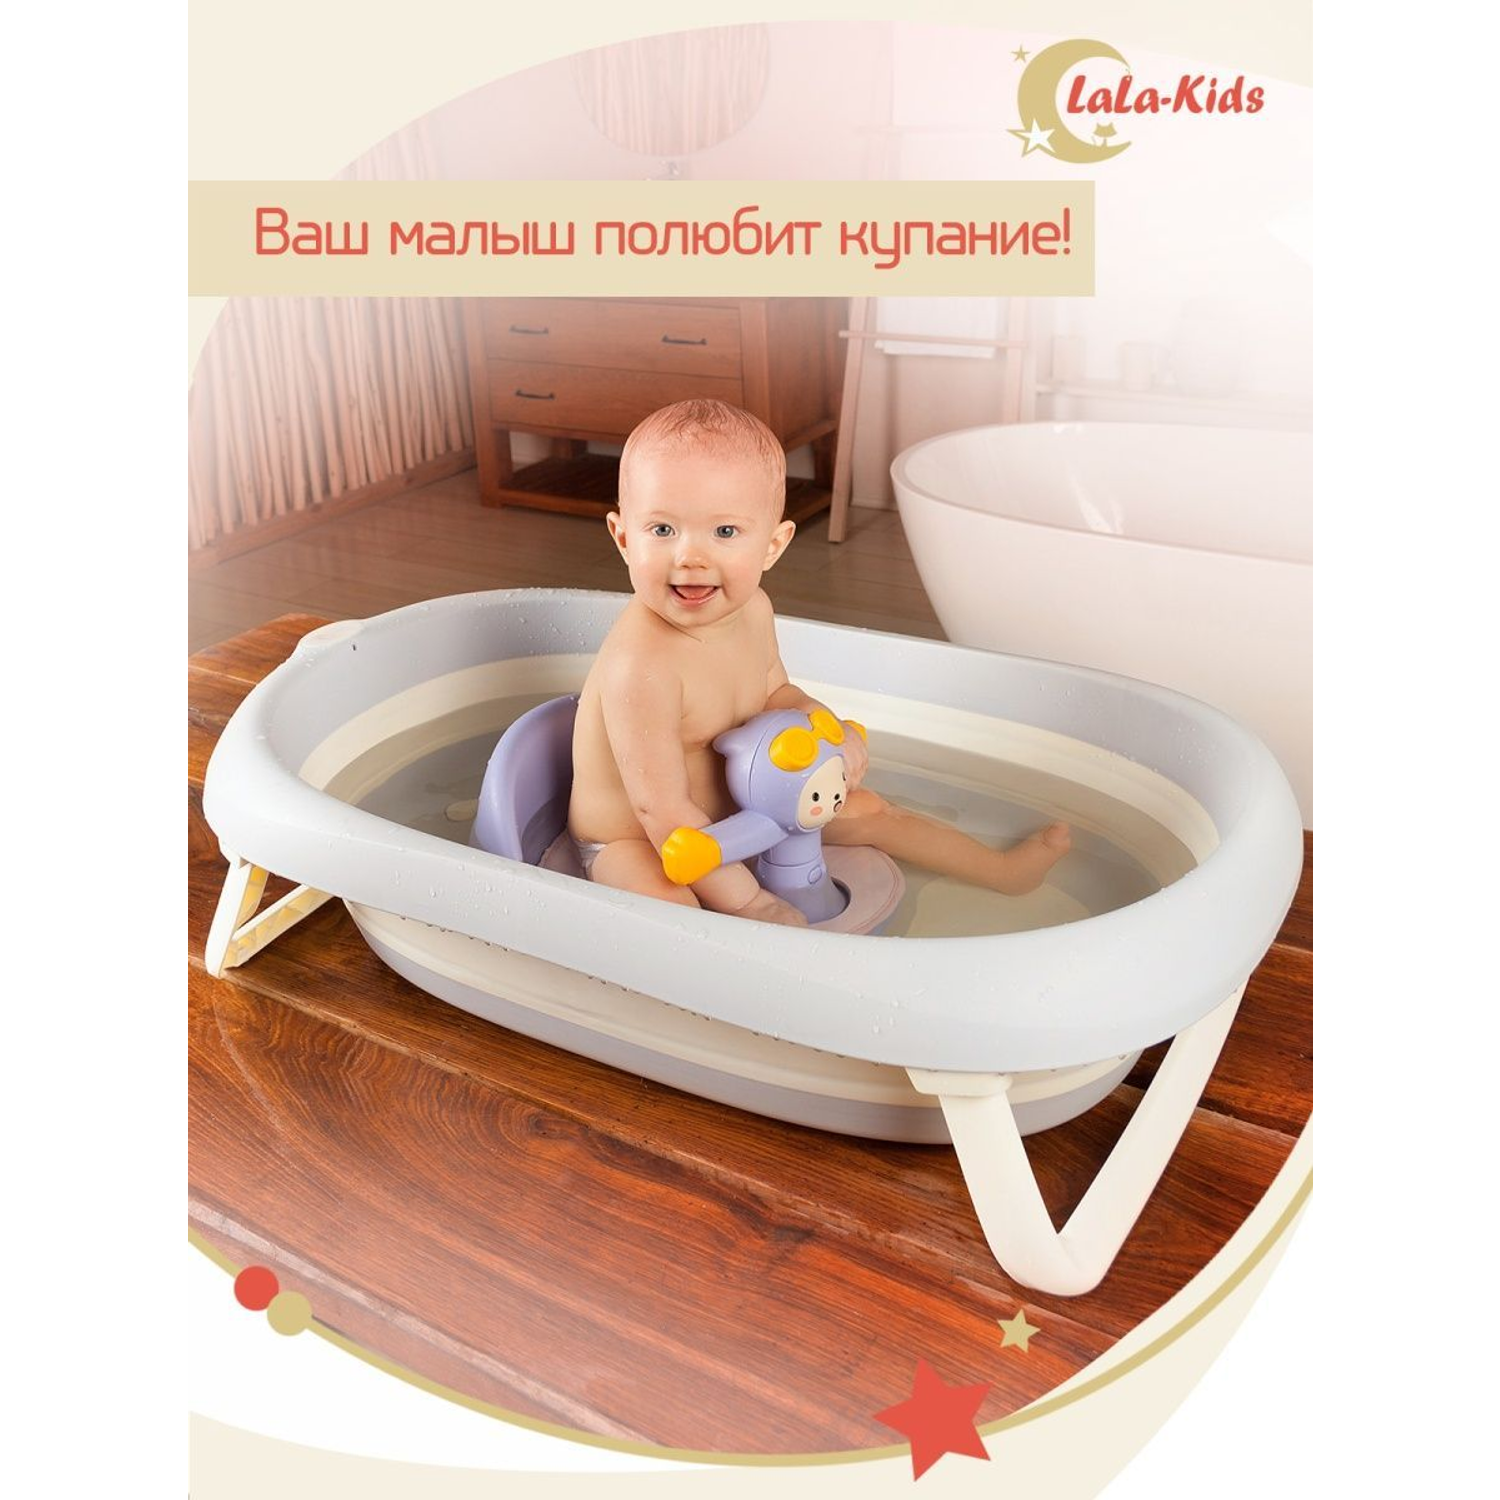 Складная ванночка LaLa-Kids для купания новорожденных - фото 9